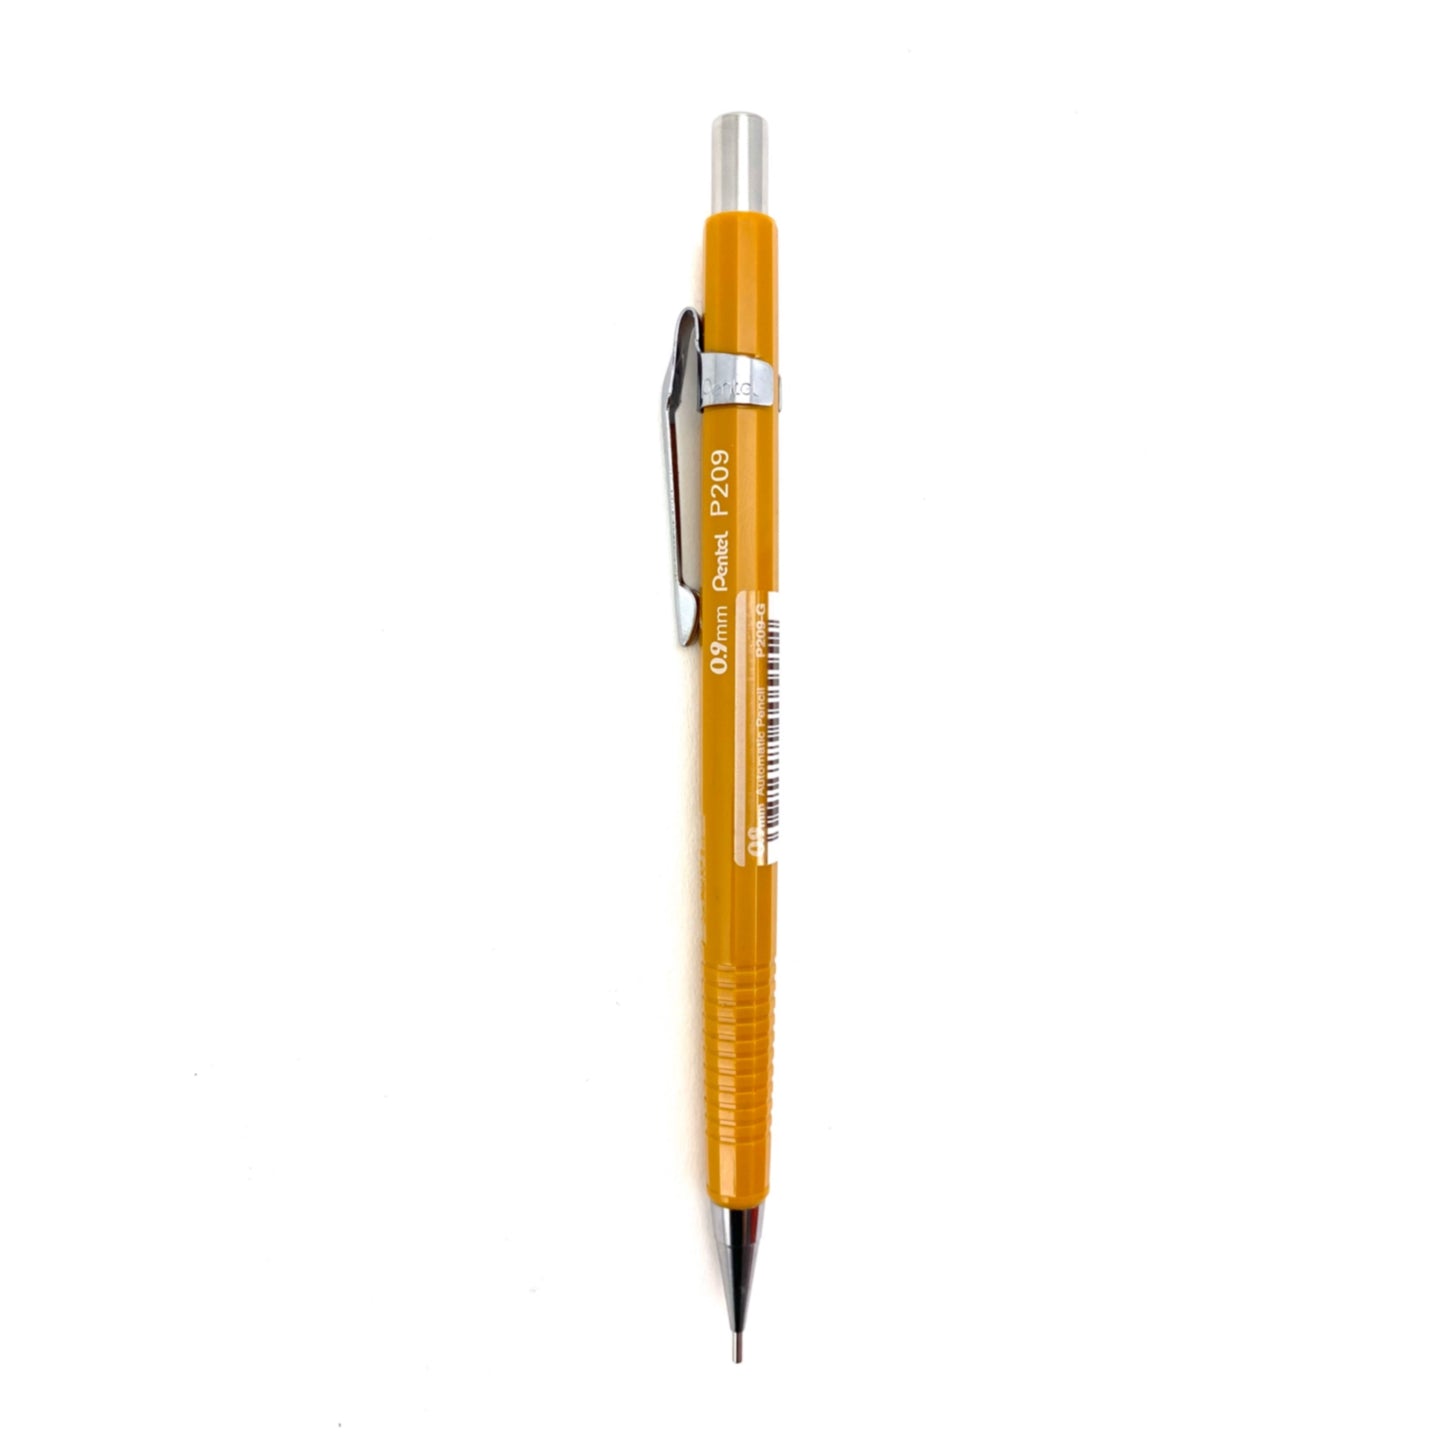 Pentel Sharp Mechanical Pencil - 0.9mm / Yellow by Pentel - K. A. Artist Shop